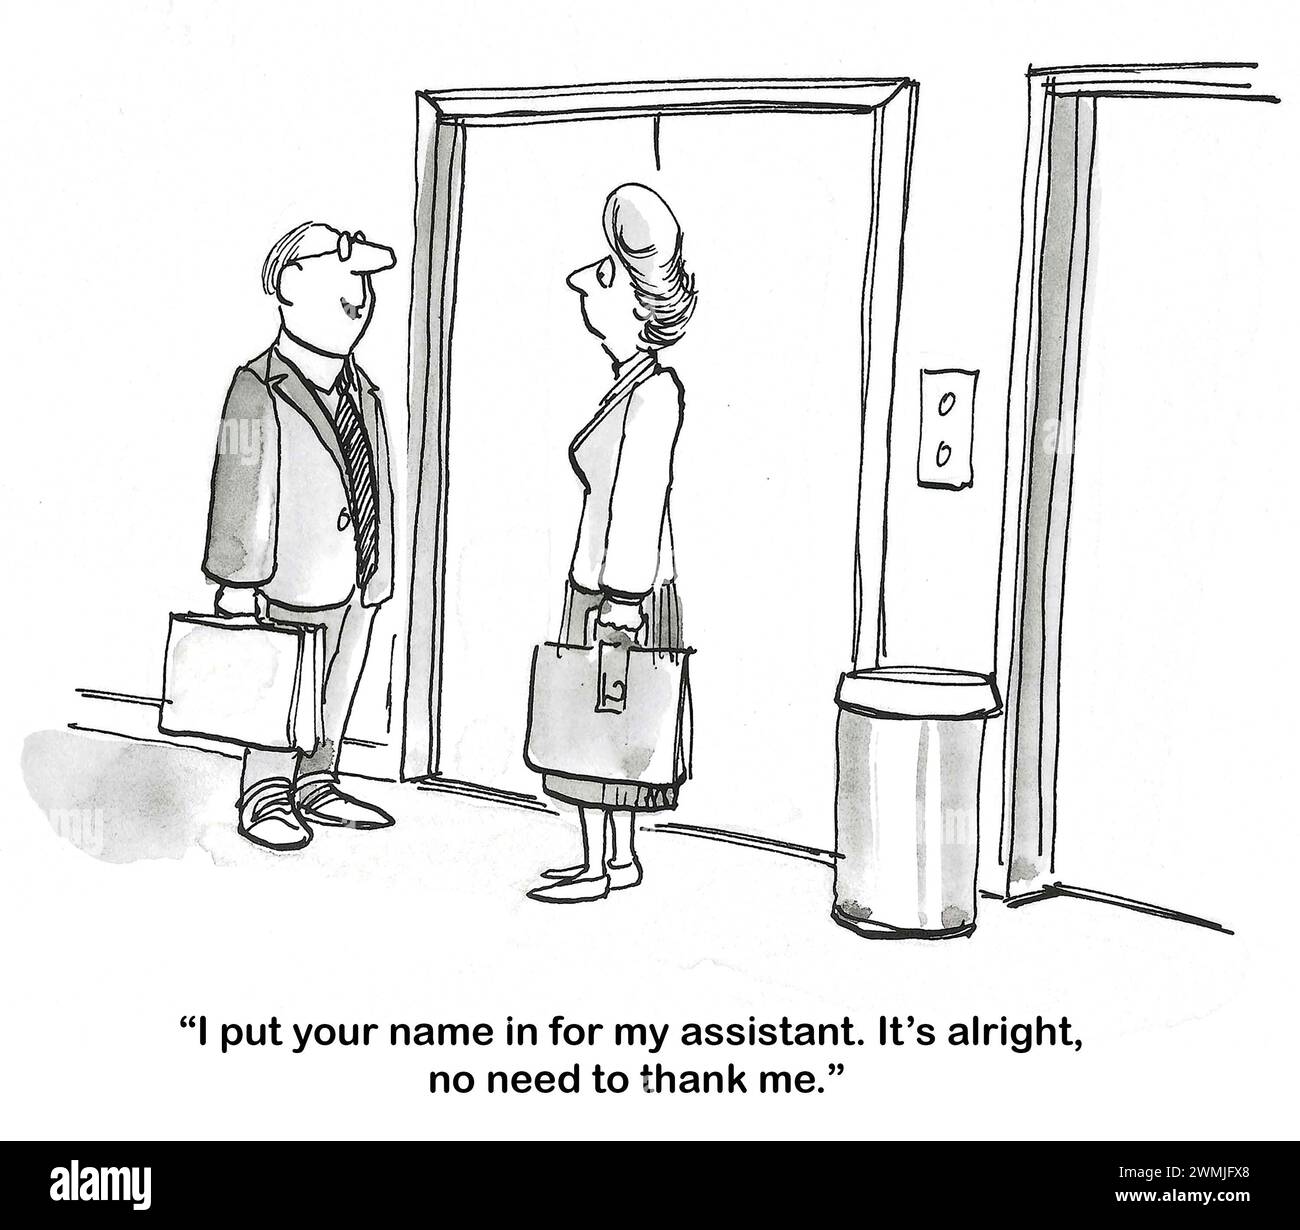 BW-Cartoon eines männlichen Bosses, der weiblichen Profis erzählt, dass er ihren Namen als Assistentin für ihn eingesetzt hat. Stockfoto